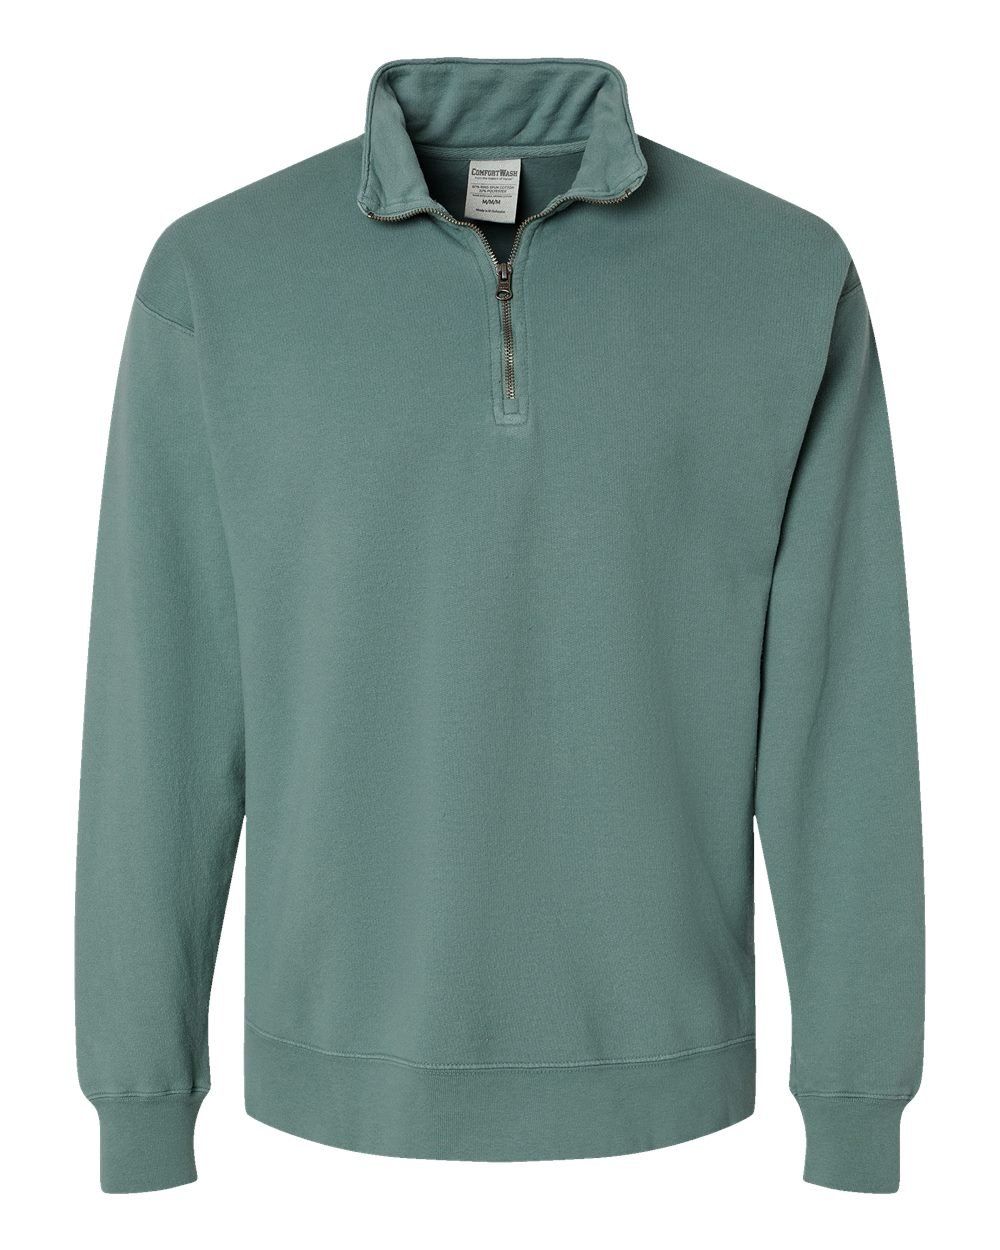 Custom Quarter Zip Sweatshirt, Order Online